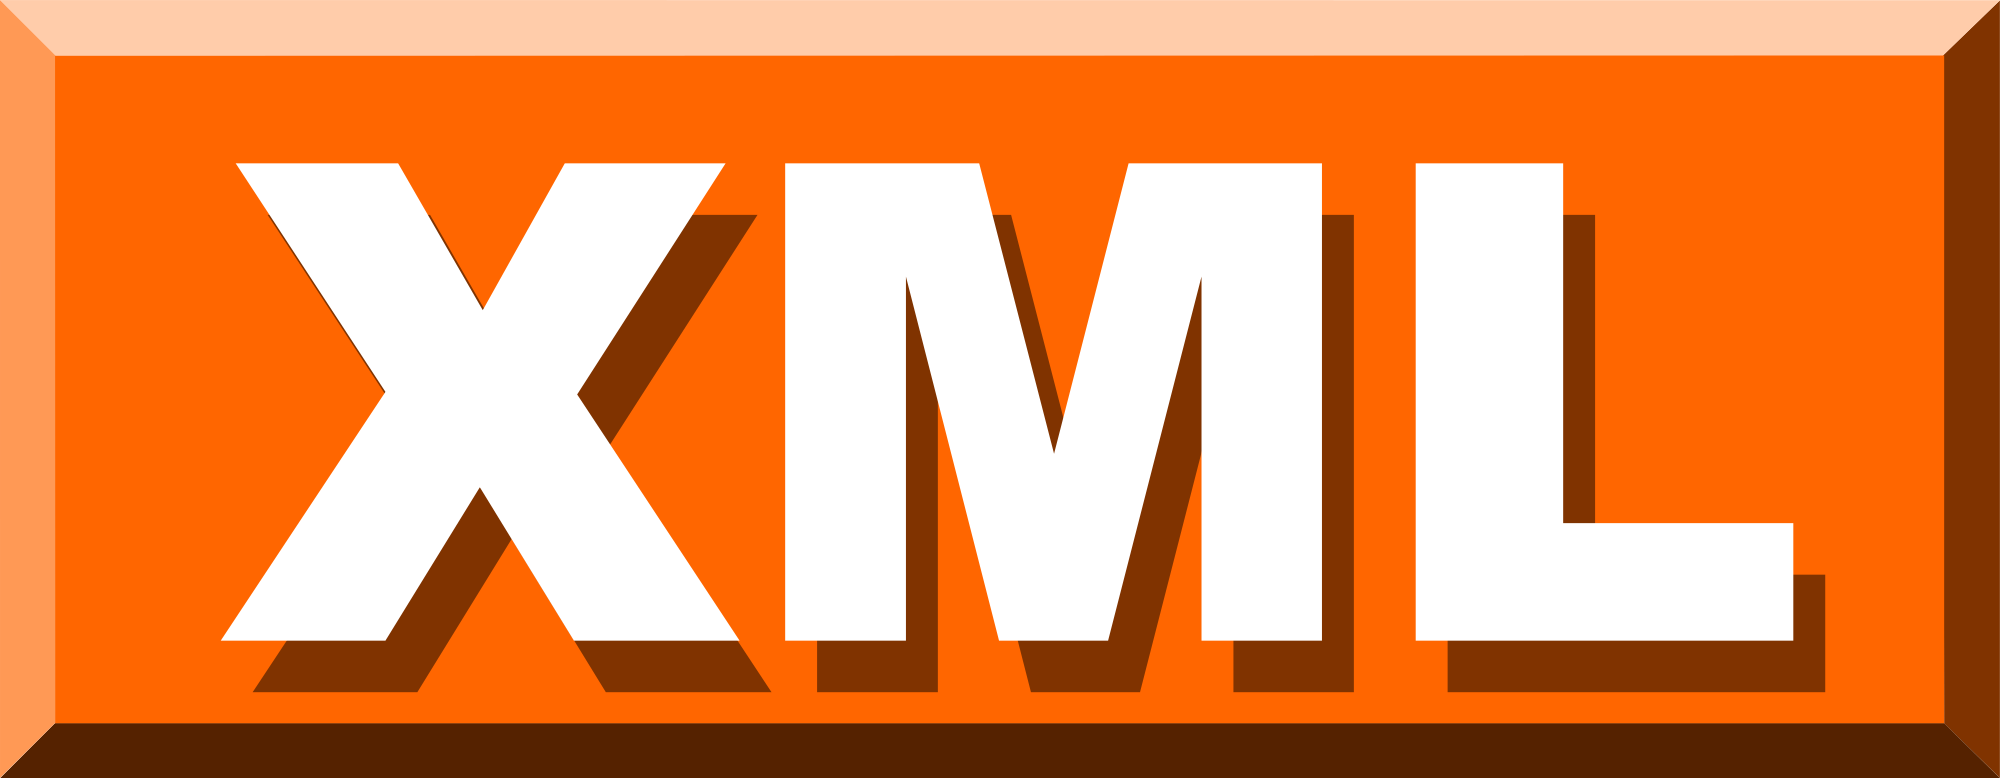 XML | XML Basics | XML in Web Design | XML Tags | XML Reserved Symbols | MSA Technosoft